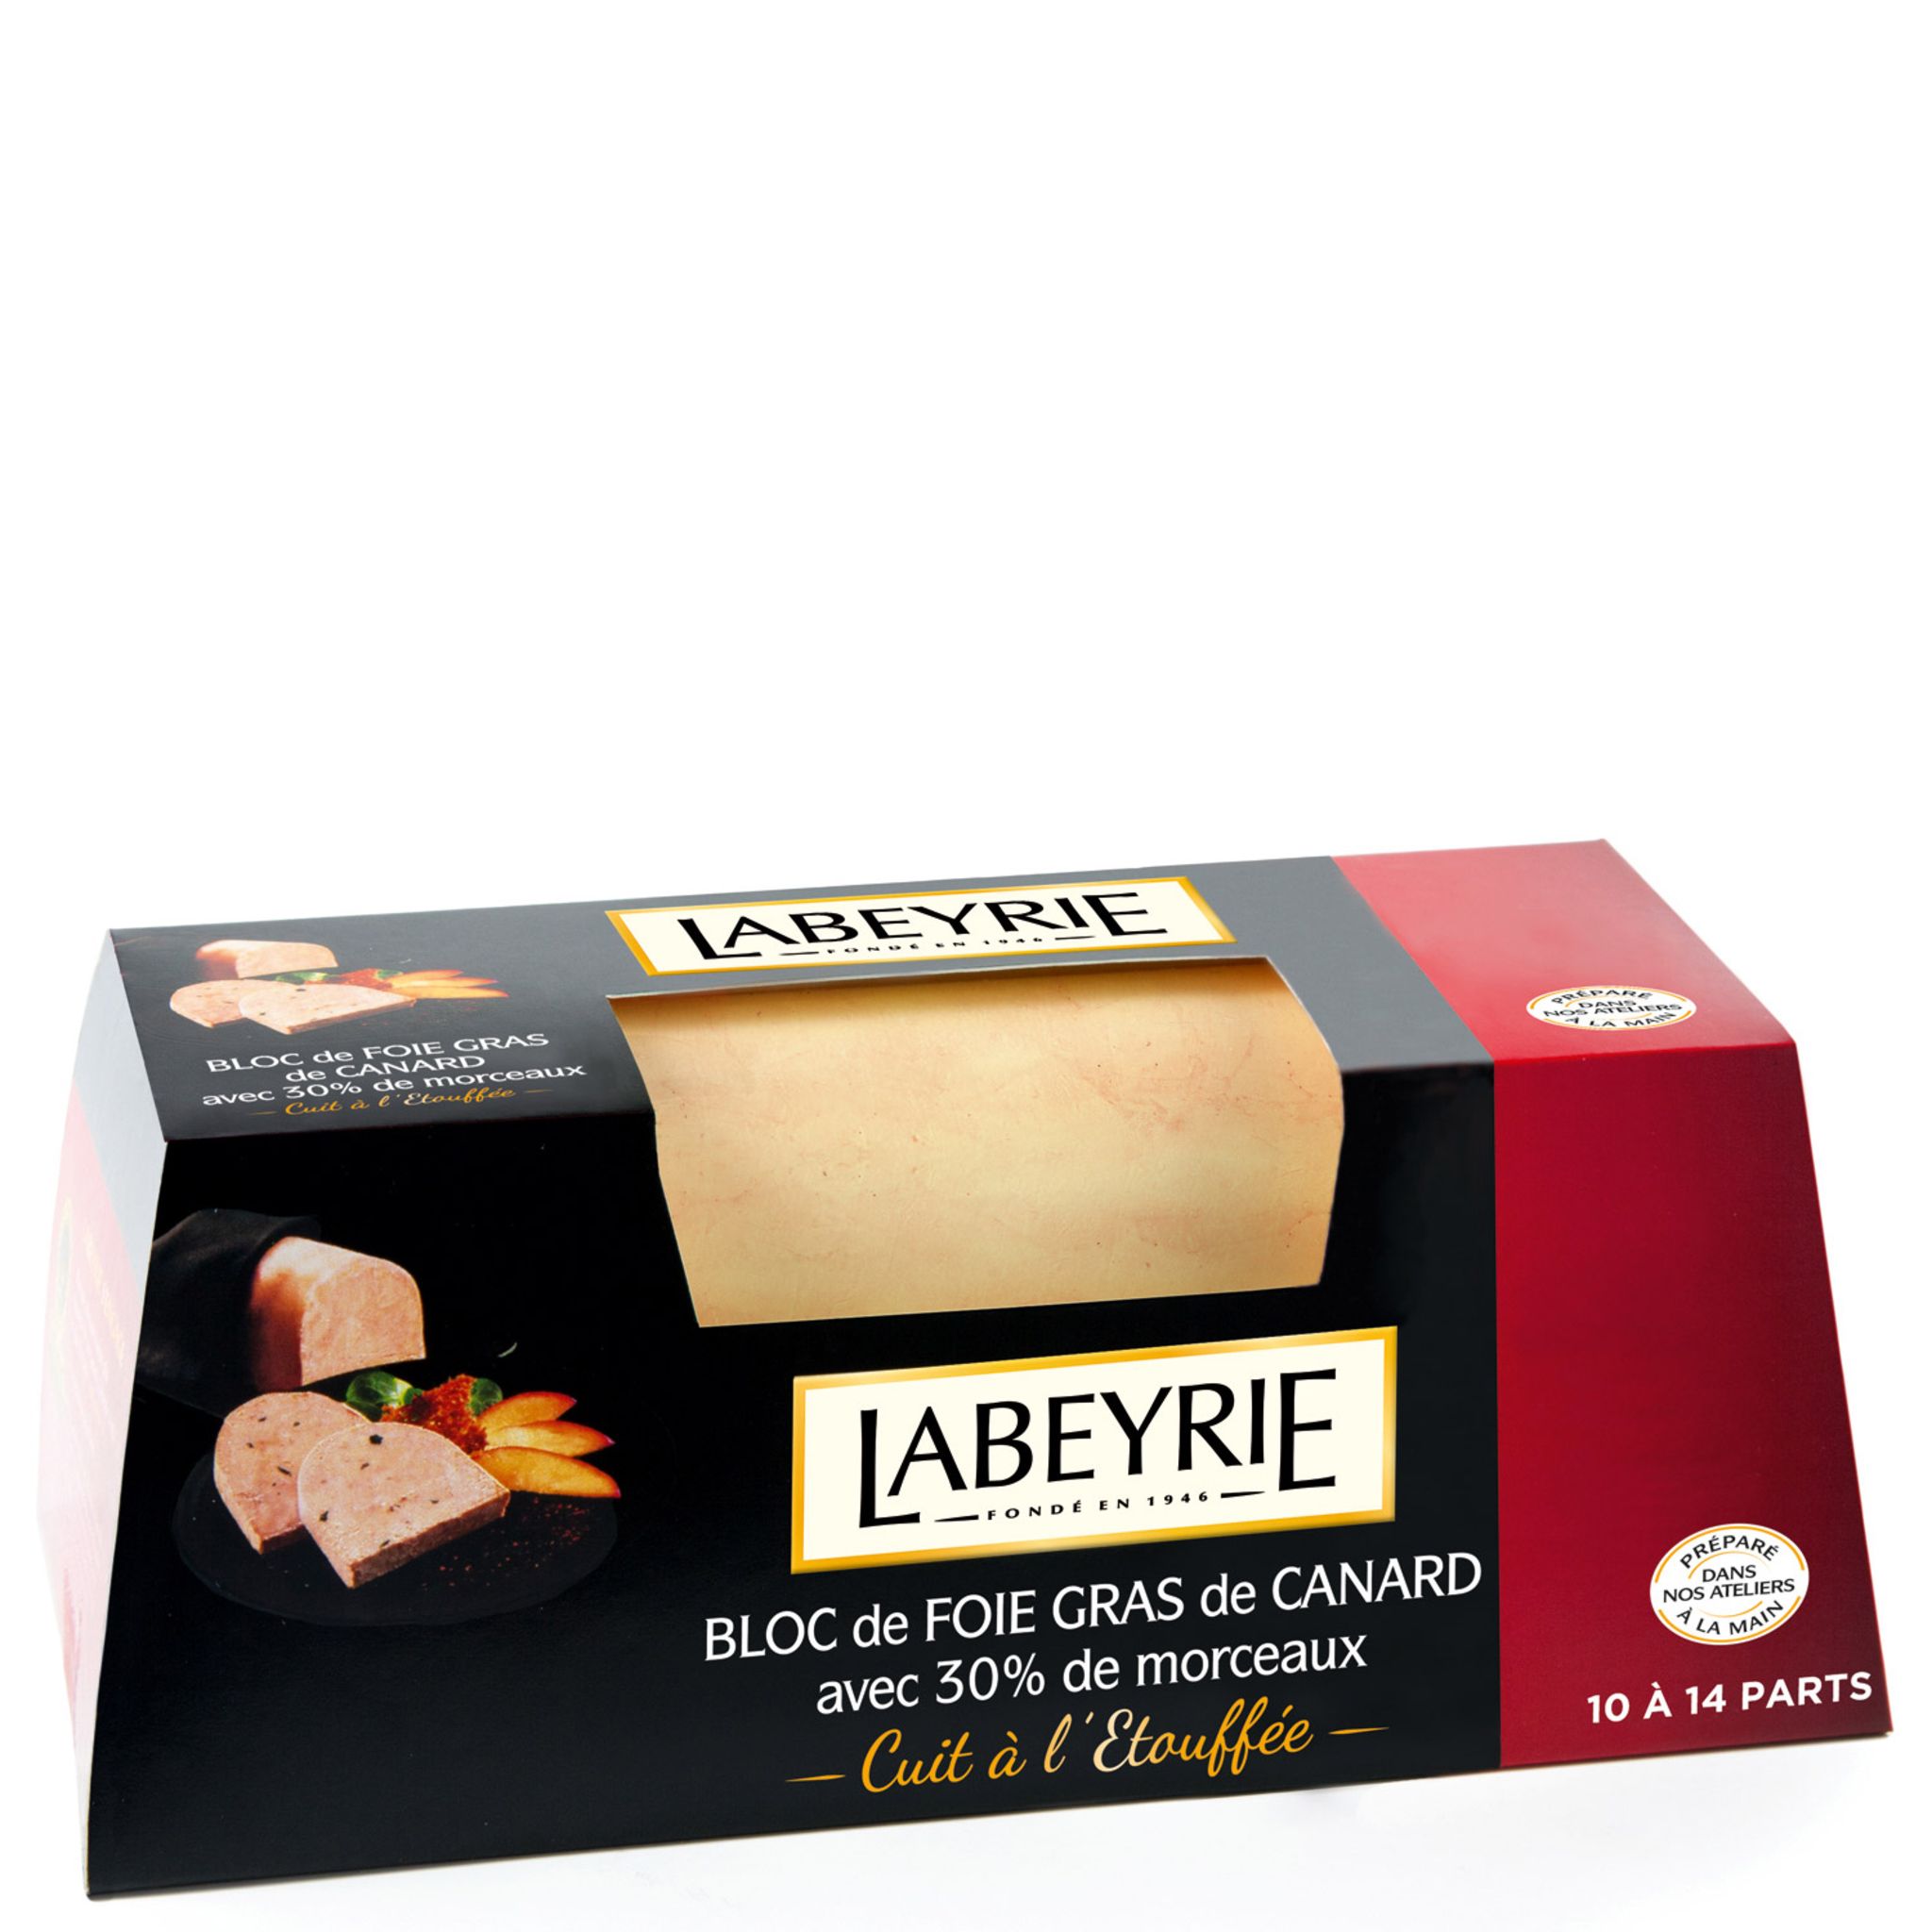 LABEYRIE Bloc de foie gras de canard 30% morceaux 500g pas cher 